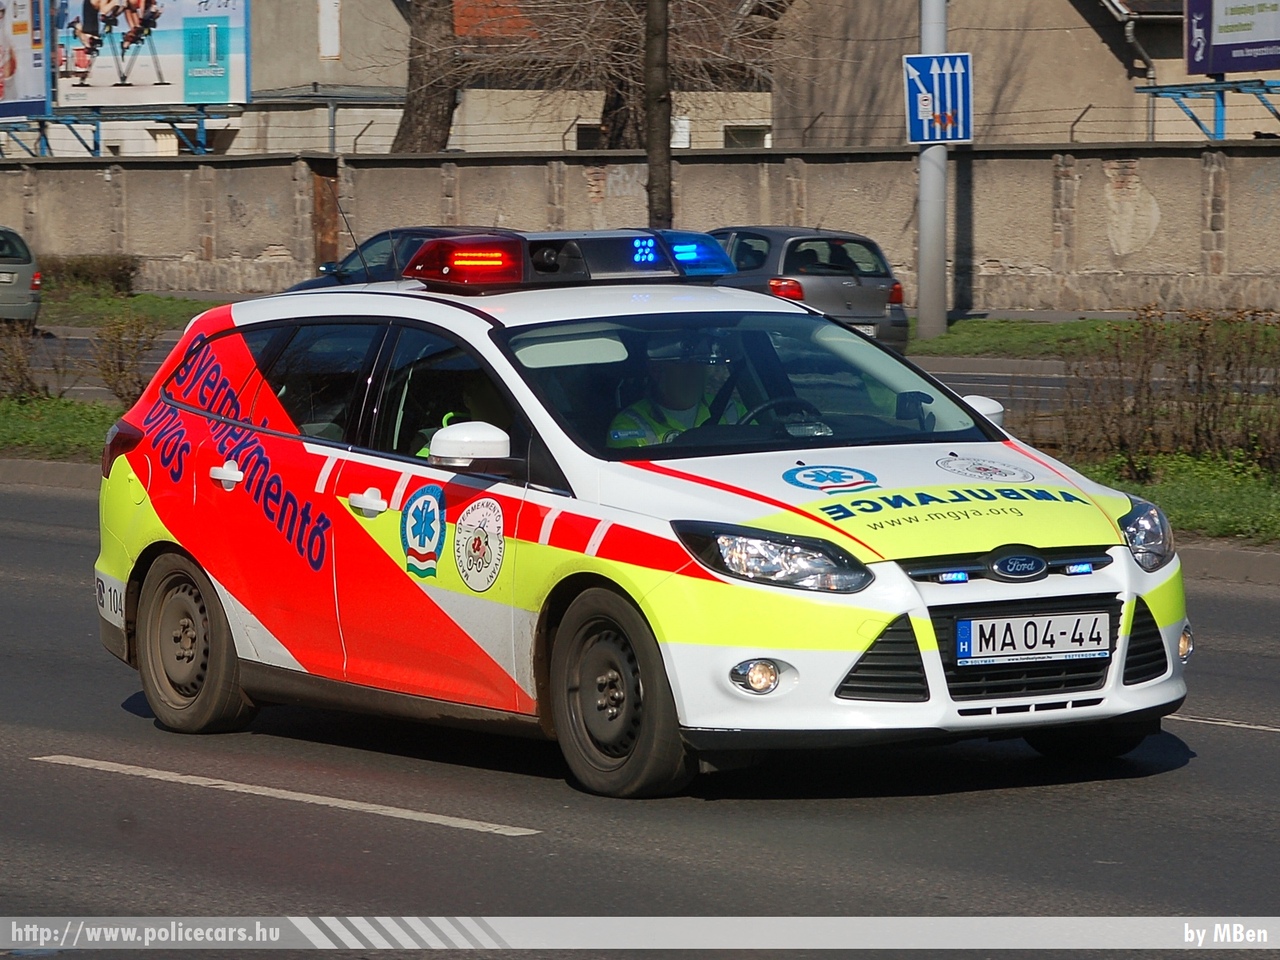 Ford Focus, Magyar Gyermekmentõ Alapítvány, fotó: MBen
Keywords: mentő magyar Magyarország mentőautó ambulance Hungary hungarian MA04-44